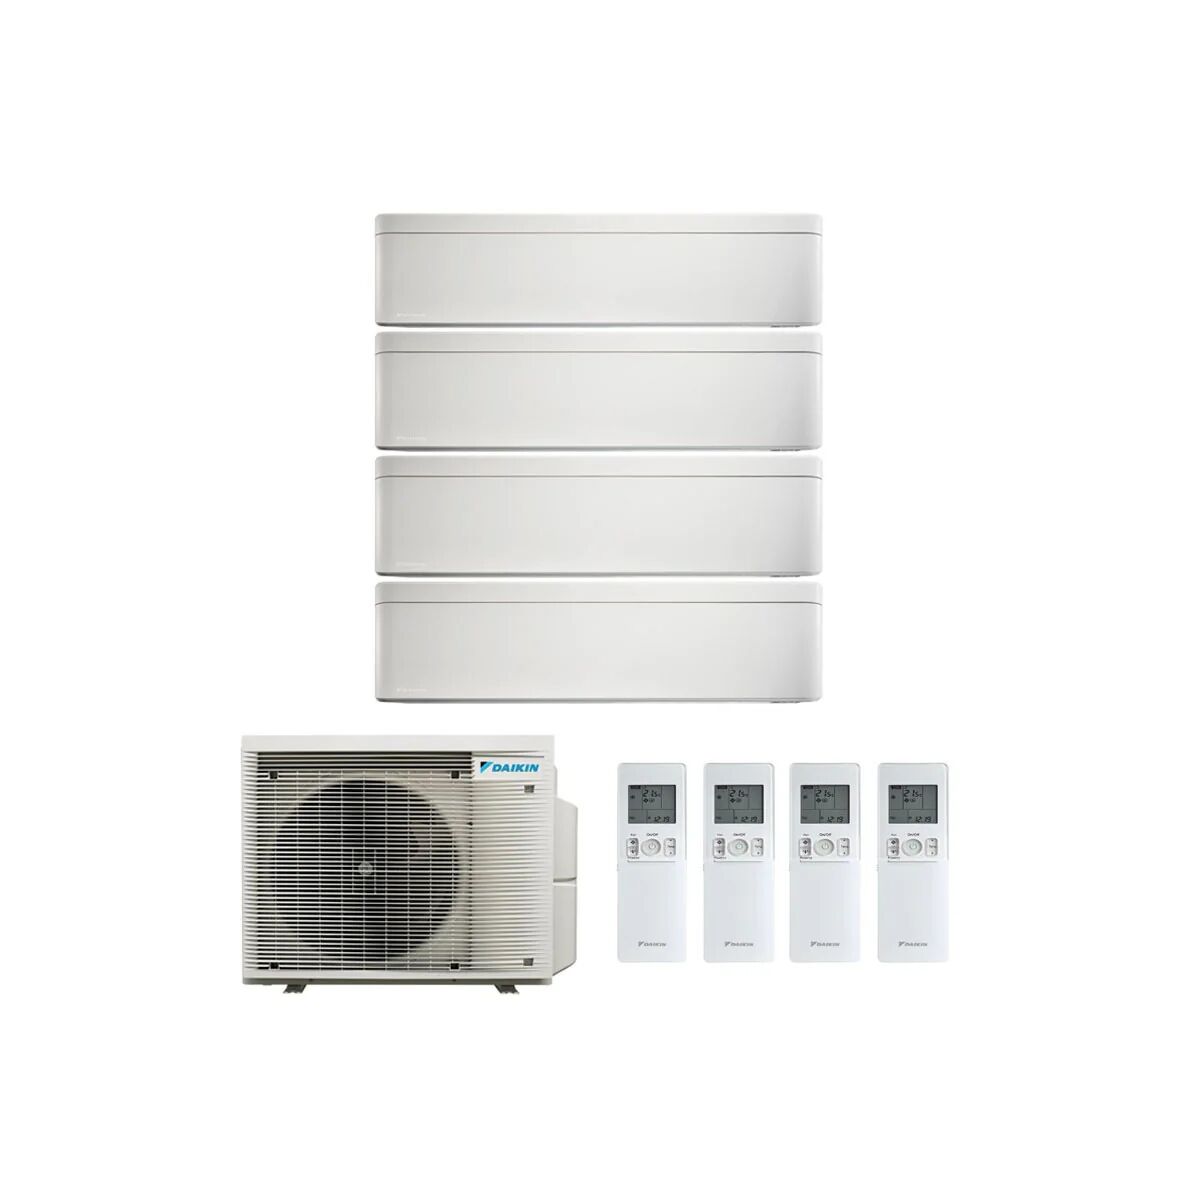 Condizionatore Daikin Stylish Bianco Quadri Split 9000+9000+9000+9000 Btu Inverter R32 4Mxm68 A+++ Wifi (4MXM68A 9+9+9+9)